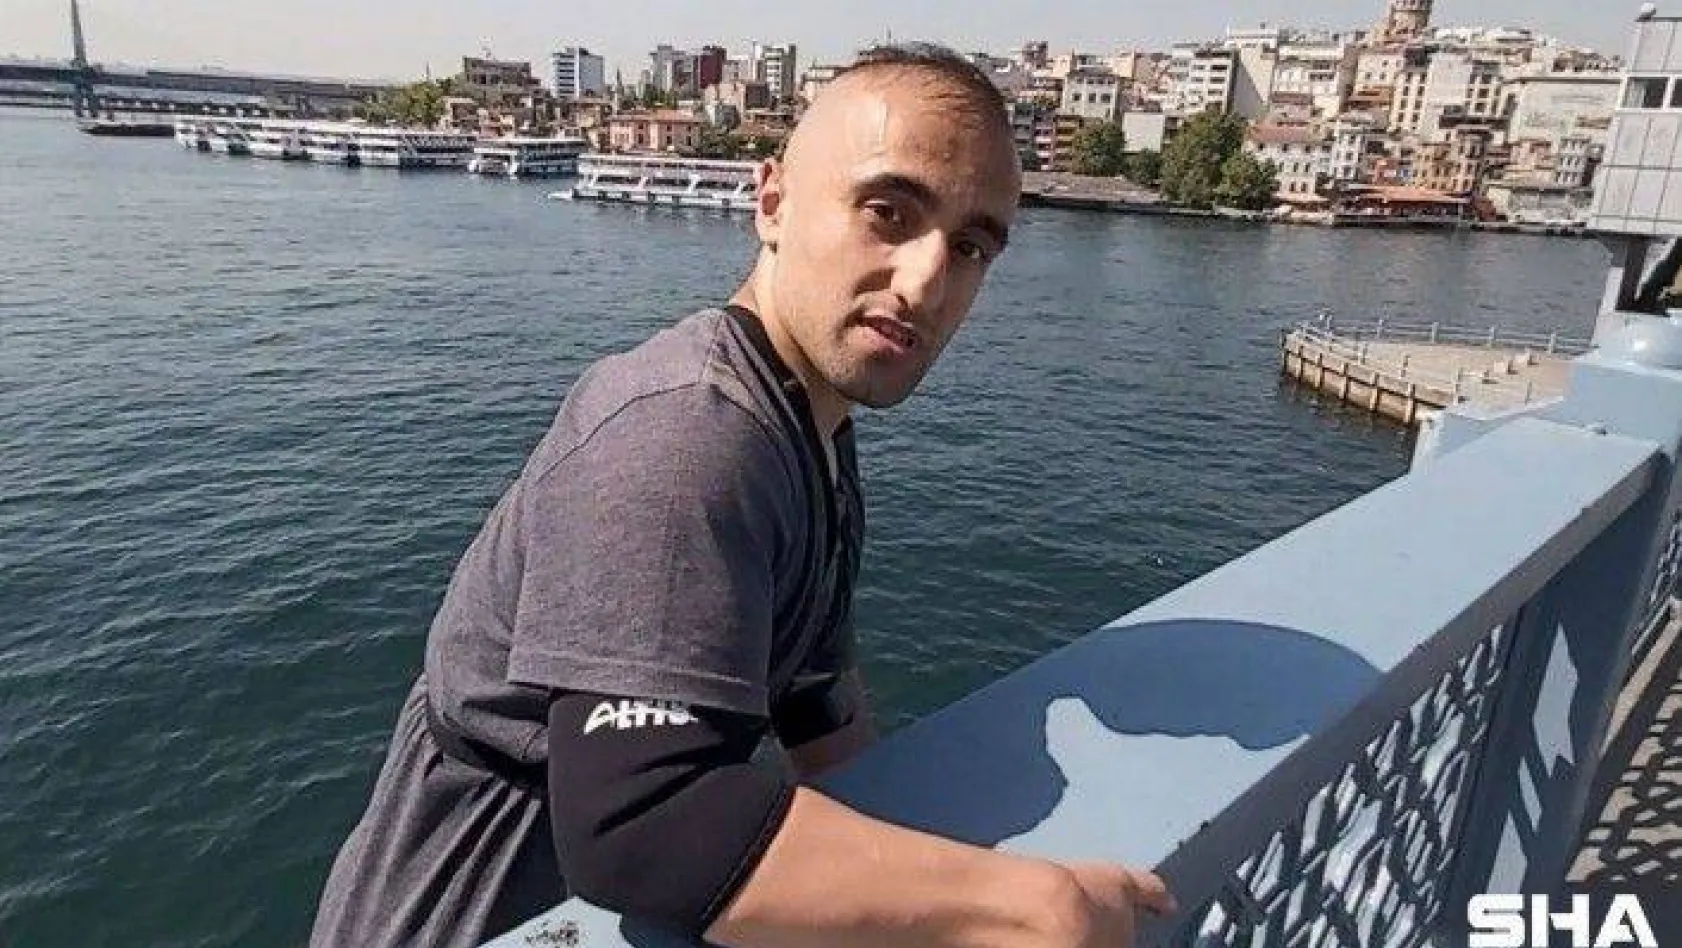 (Özel) İstanbul'da çılgın genç Galata Köprüsü'nden geminin üstüne atladı